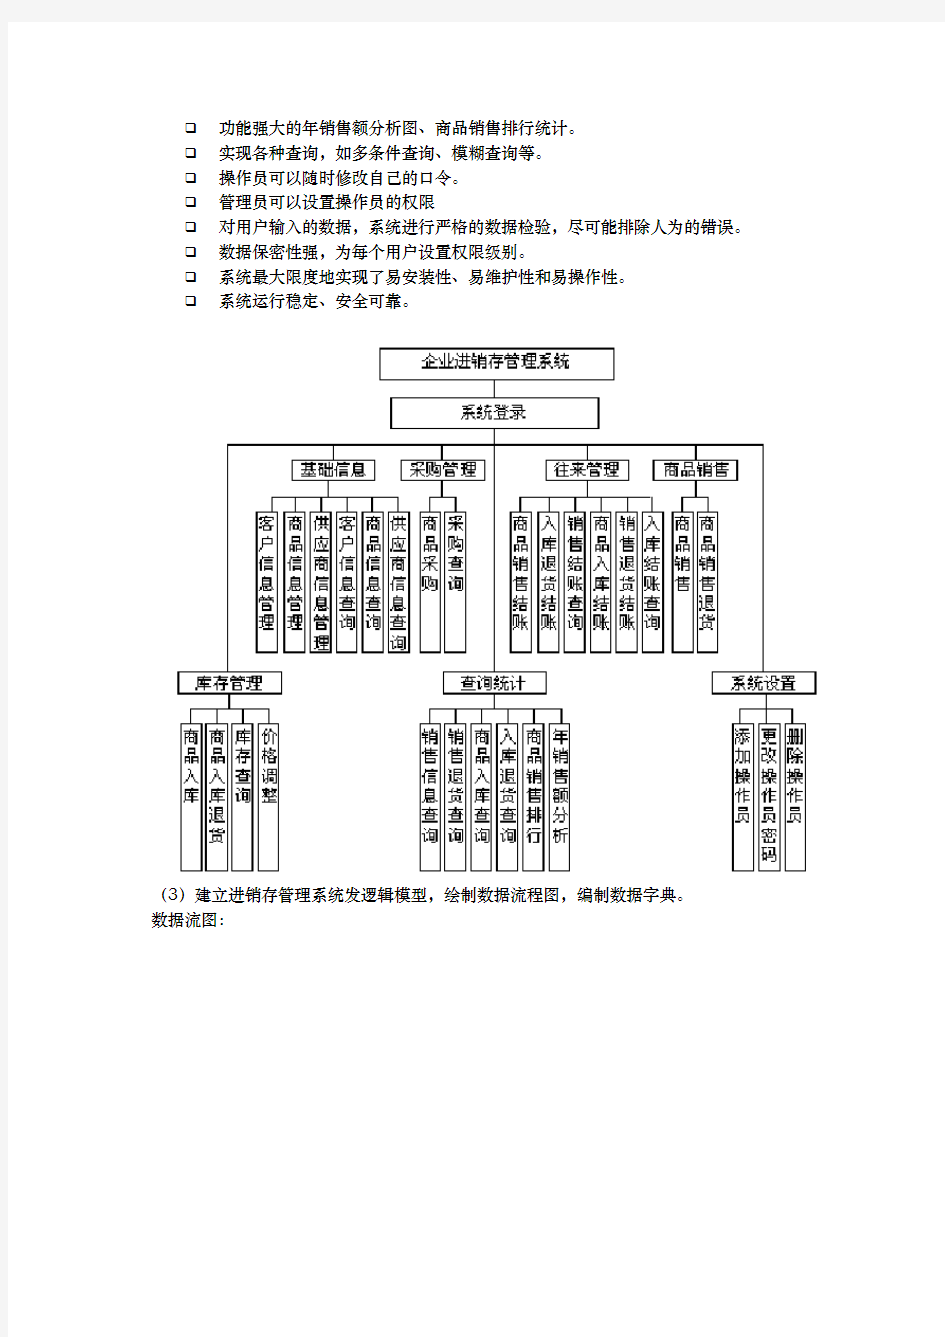 广东工业大学管理信息系统作业